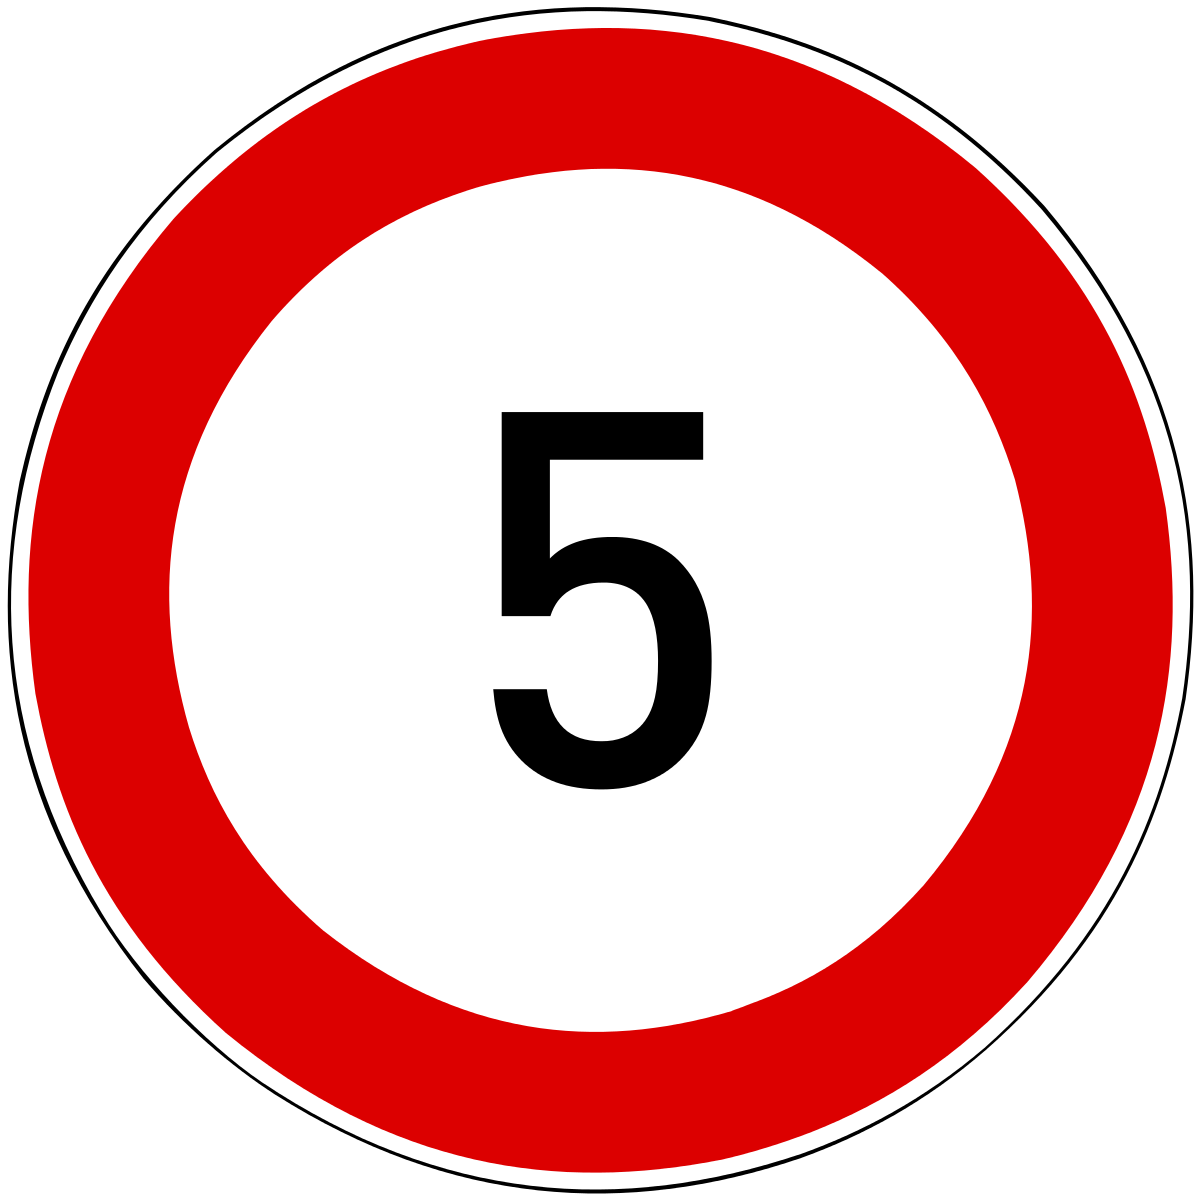 Пятерка в круг. Знак скорость 5 км/ч. Дорожные знаки ограничение скорости 5. Ограничение скорости 5 км дорожный знак. Дорожные знаки круглые.